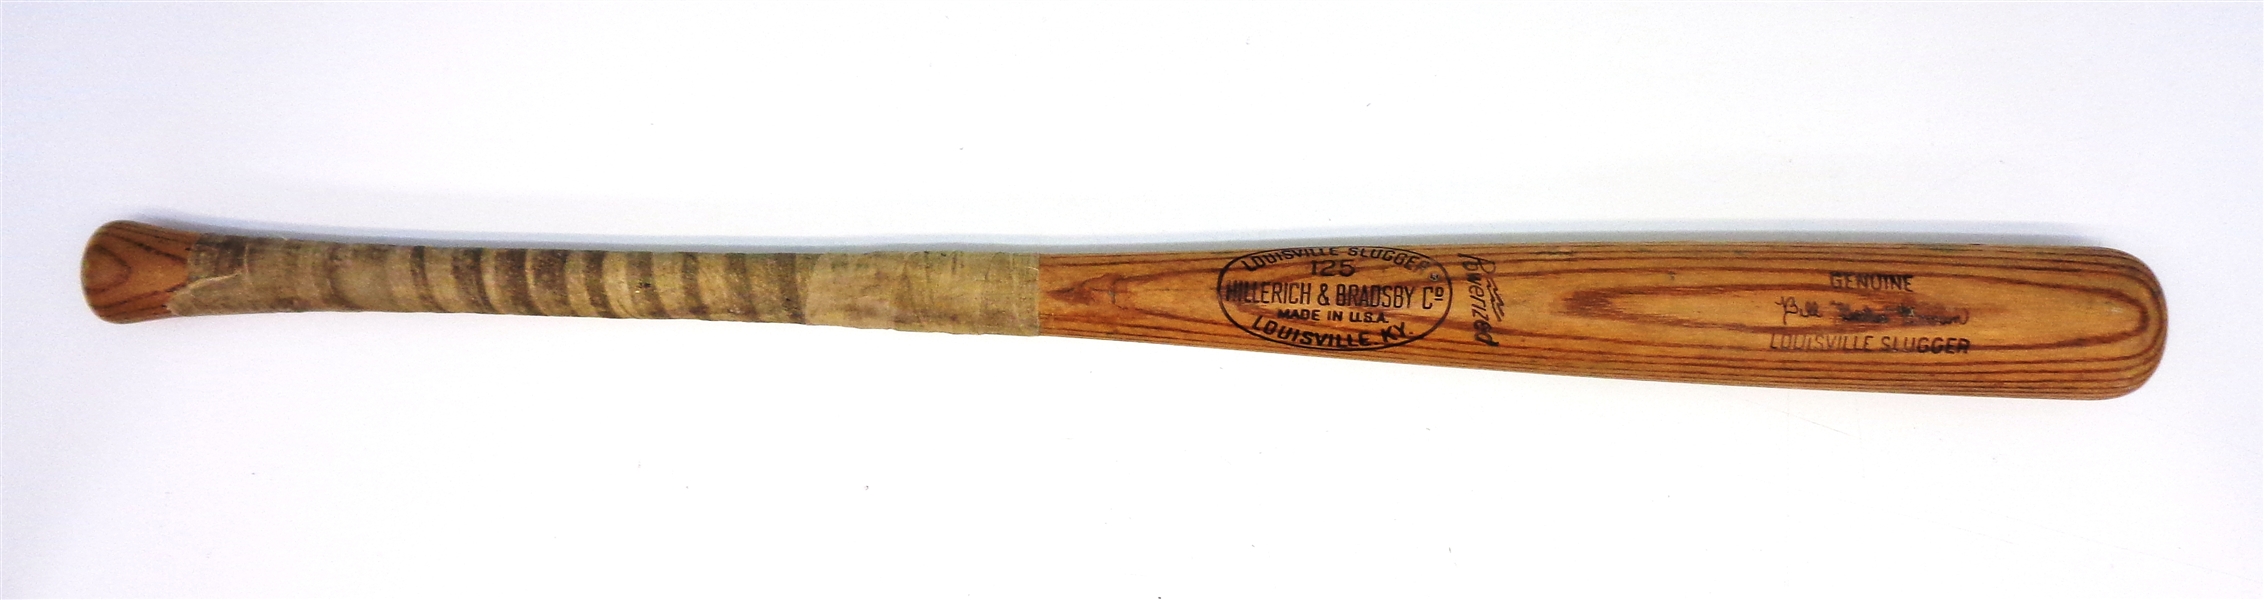 Gates Brown Game Used Louisville Slugger Bat